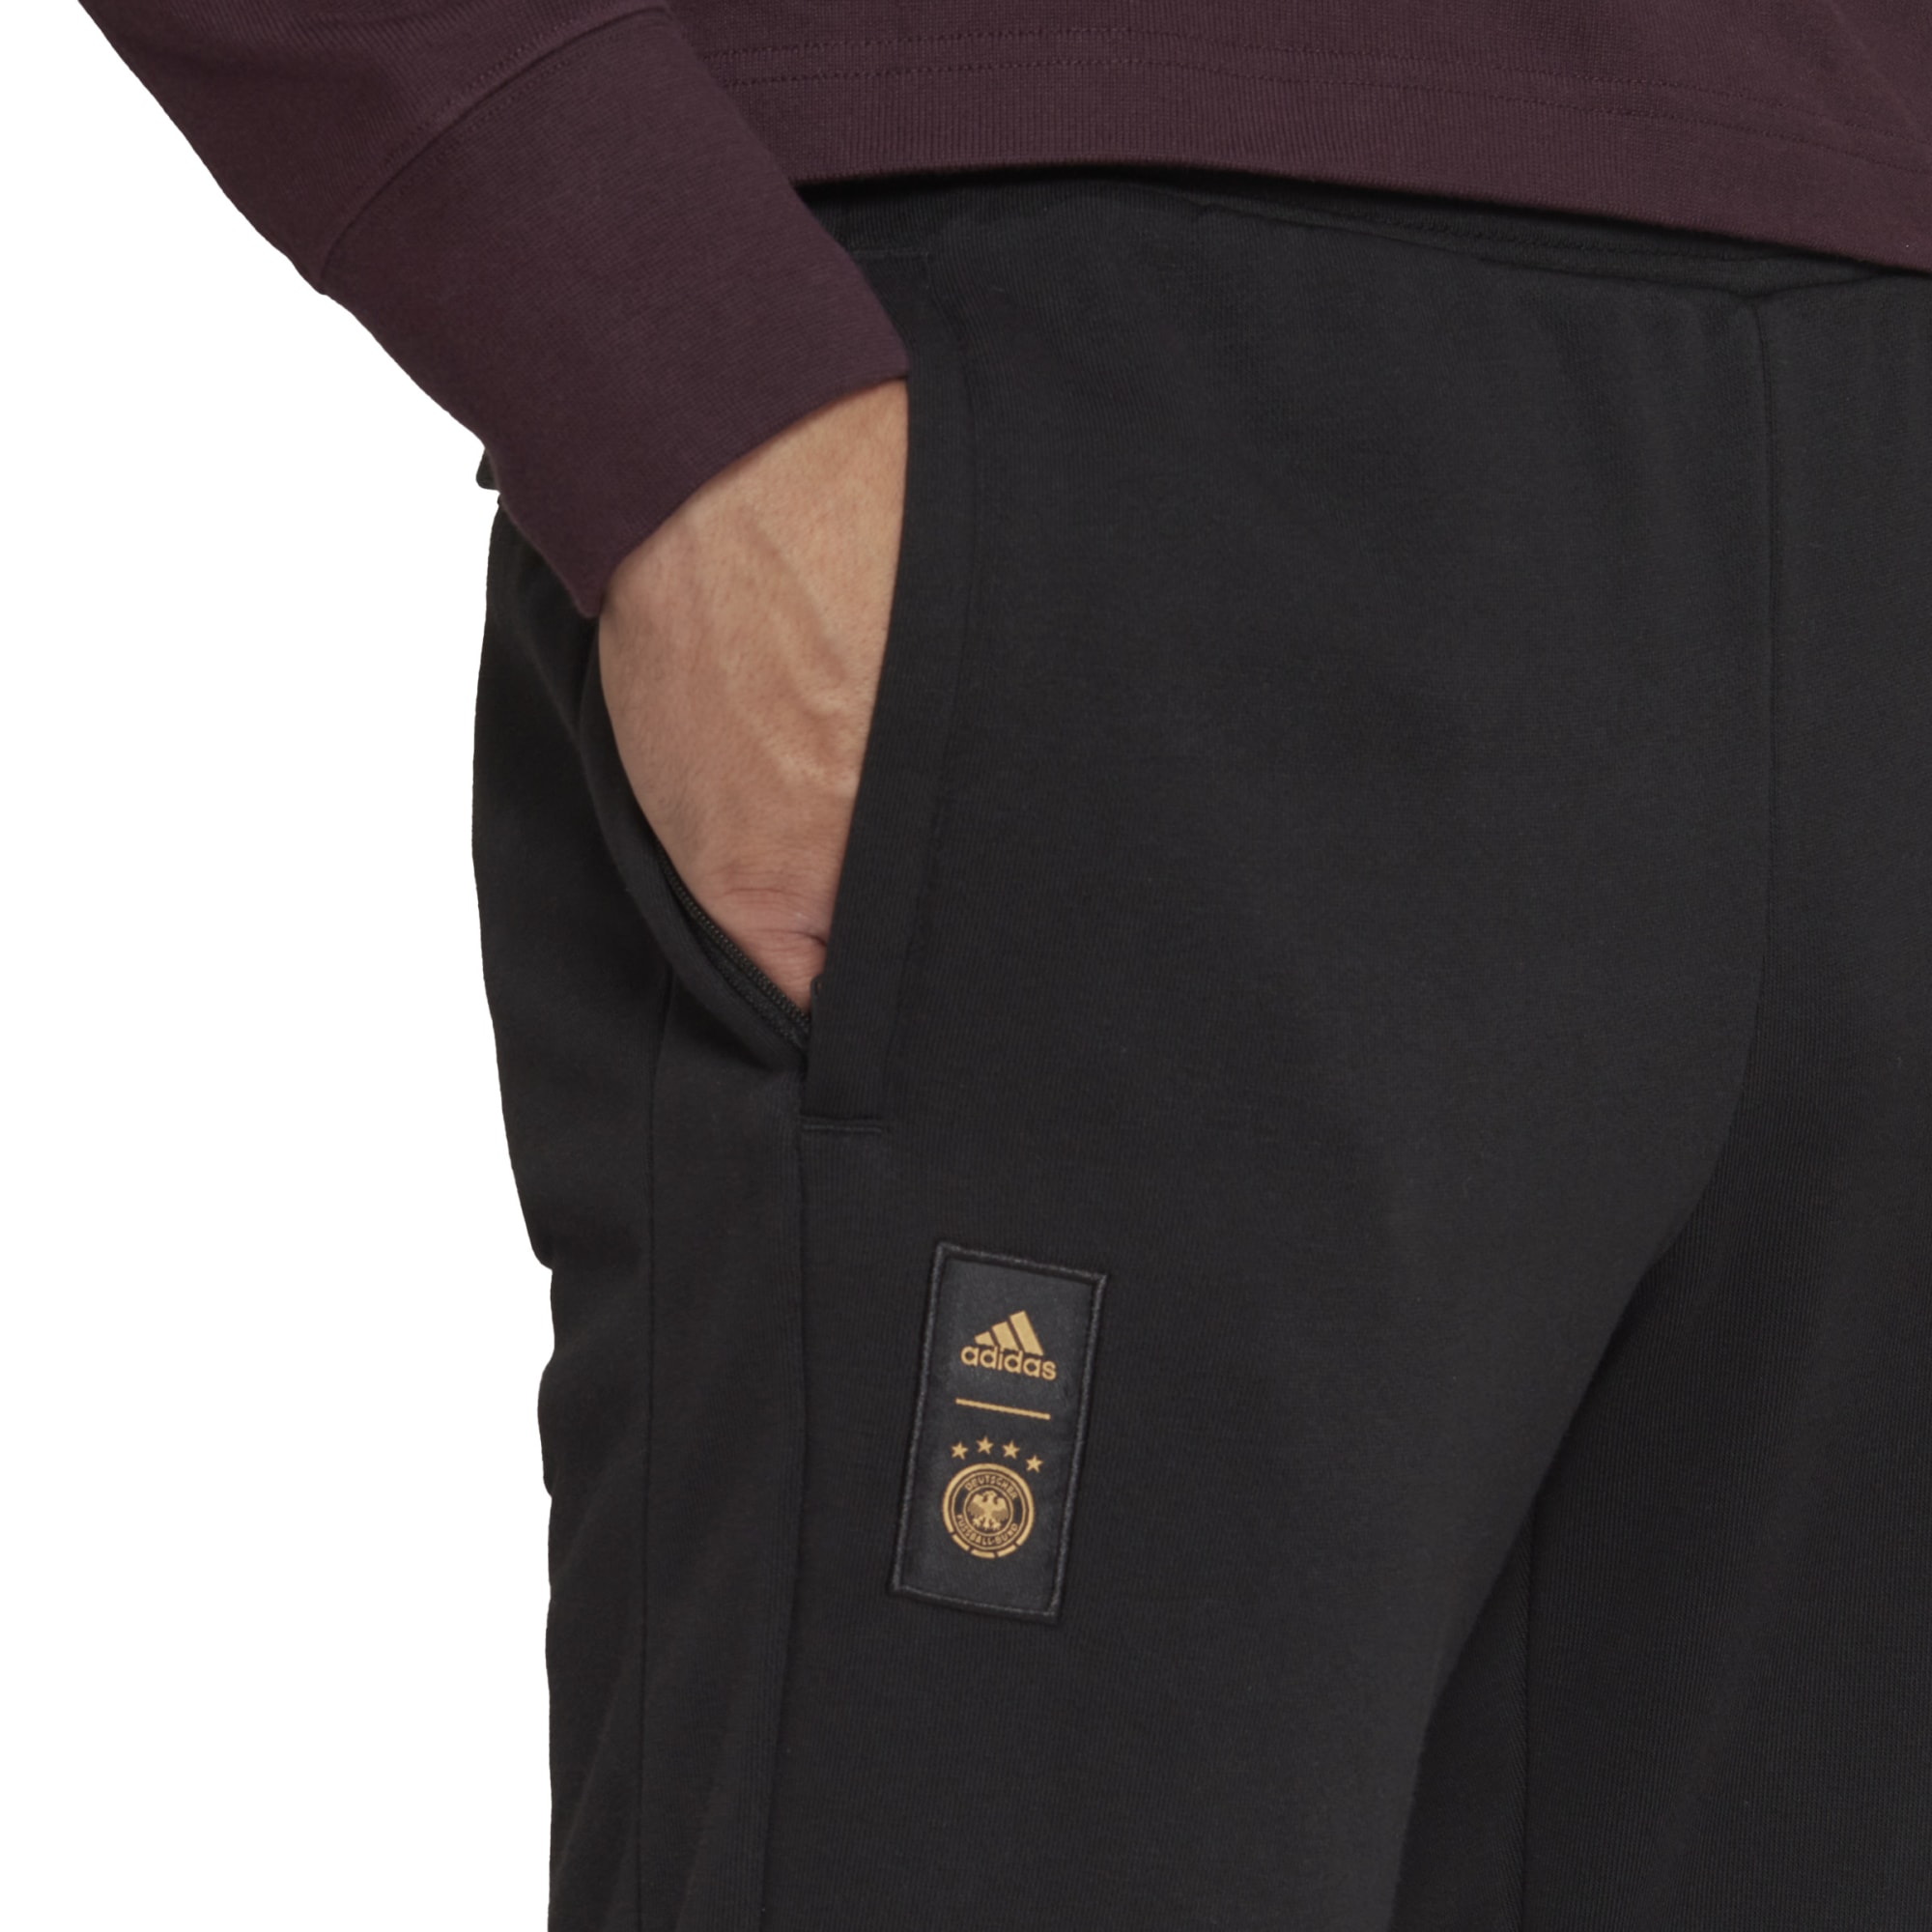 DFB adidas Originals Track Pants - Black